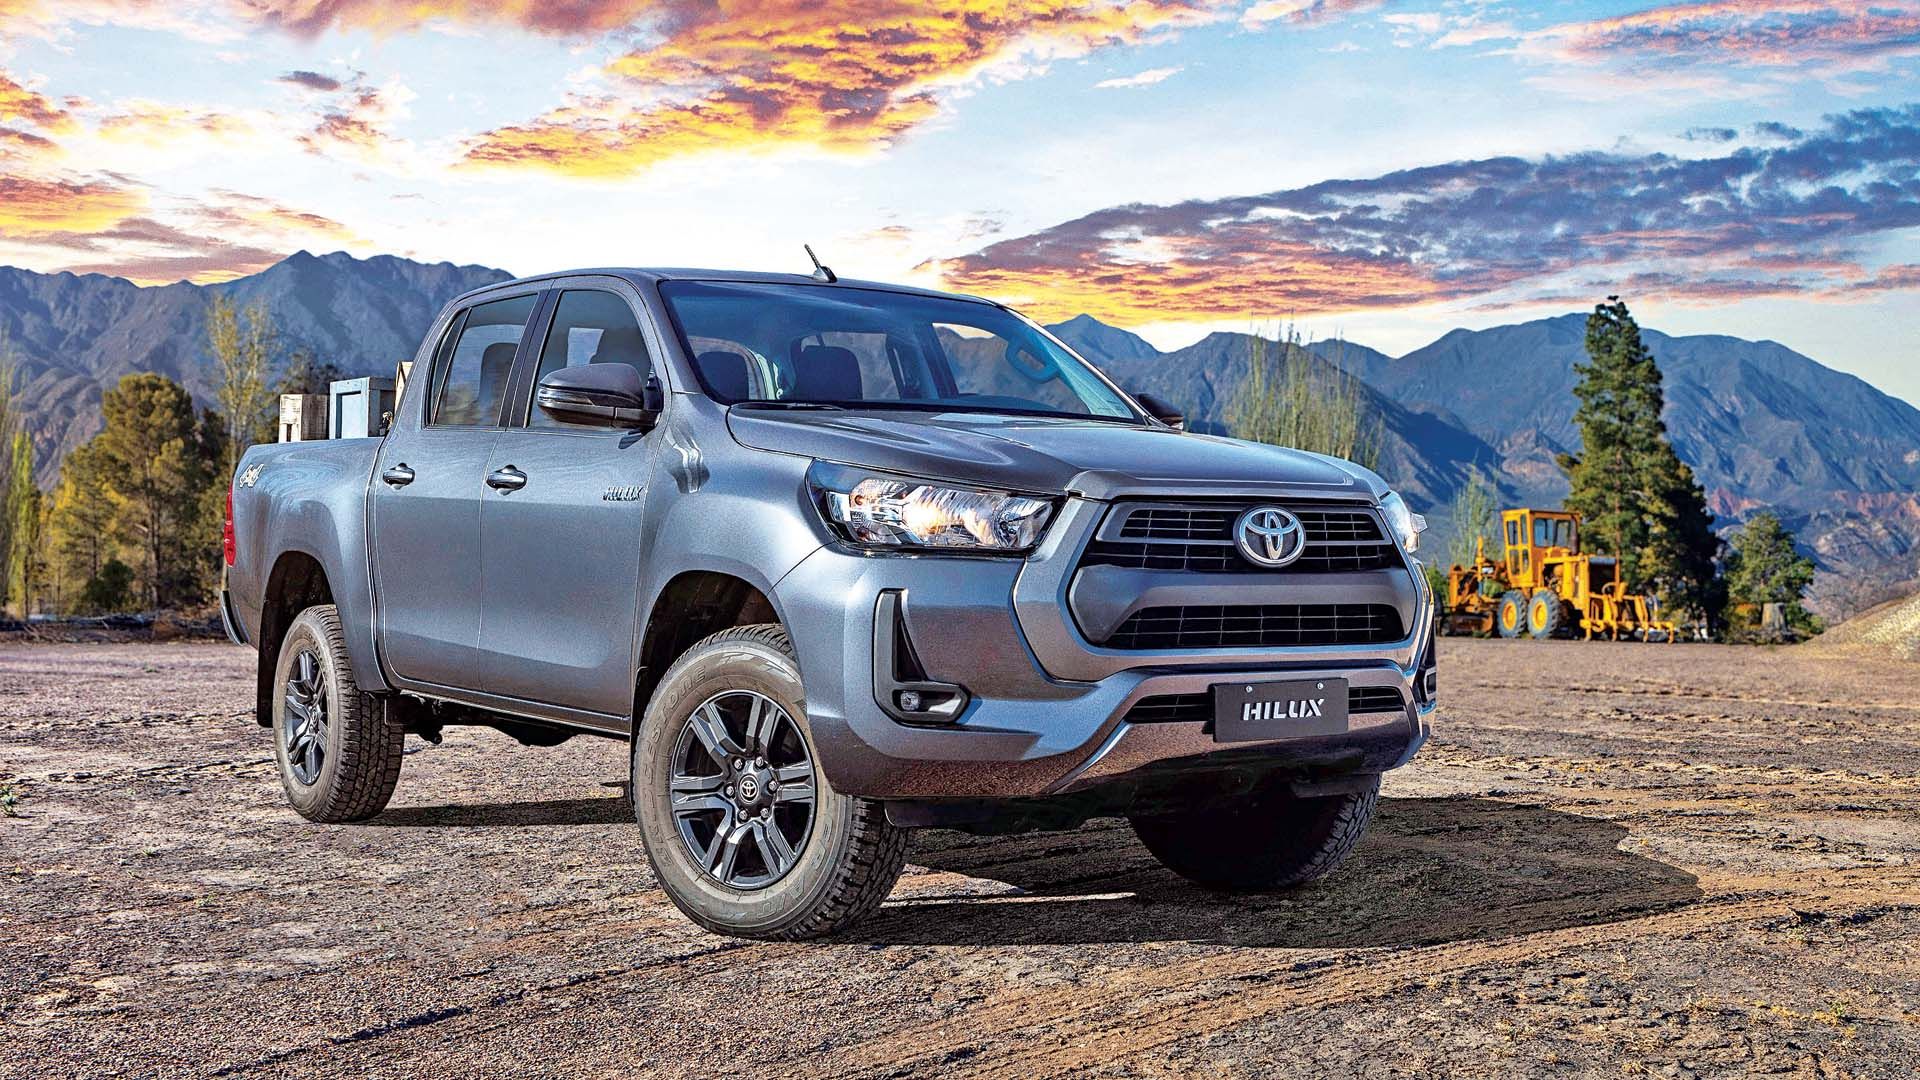 La próxima Toyota Hilux tendrá mejoras de confort y manejo Parabrisas